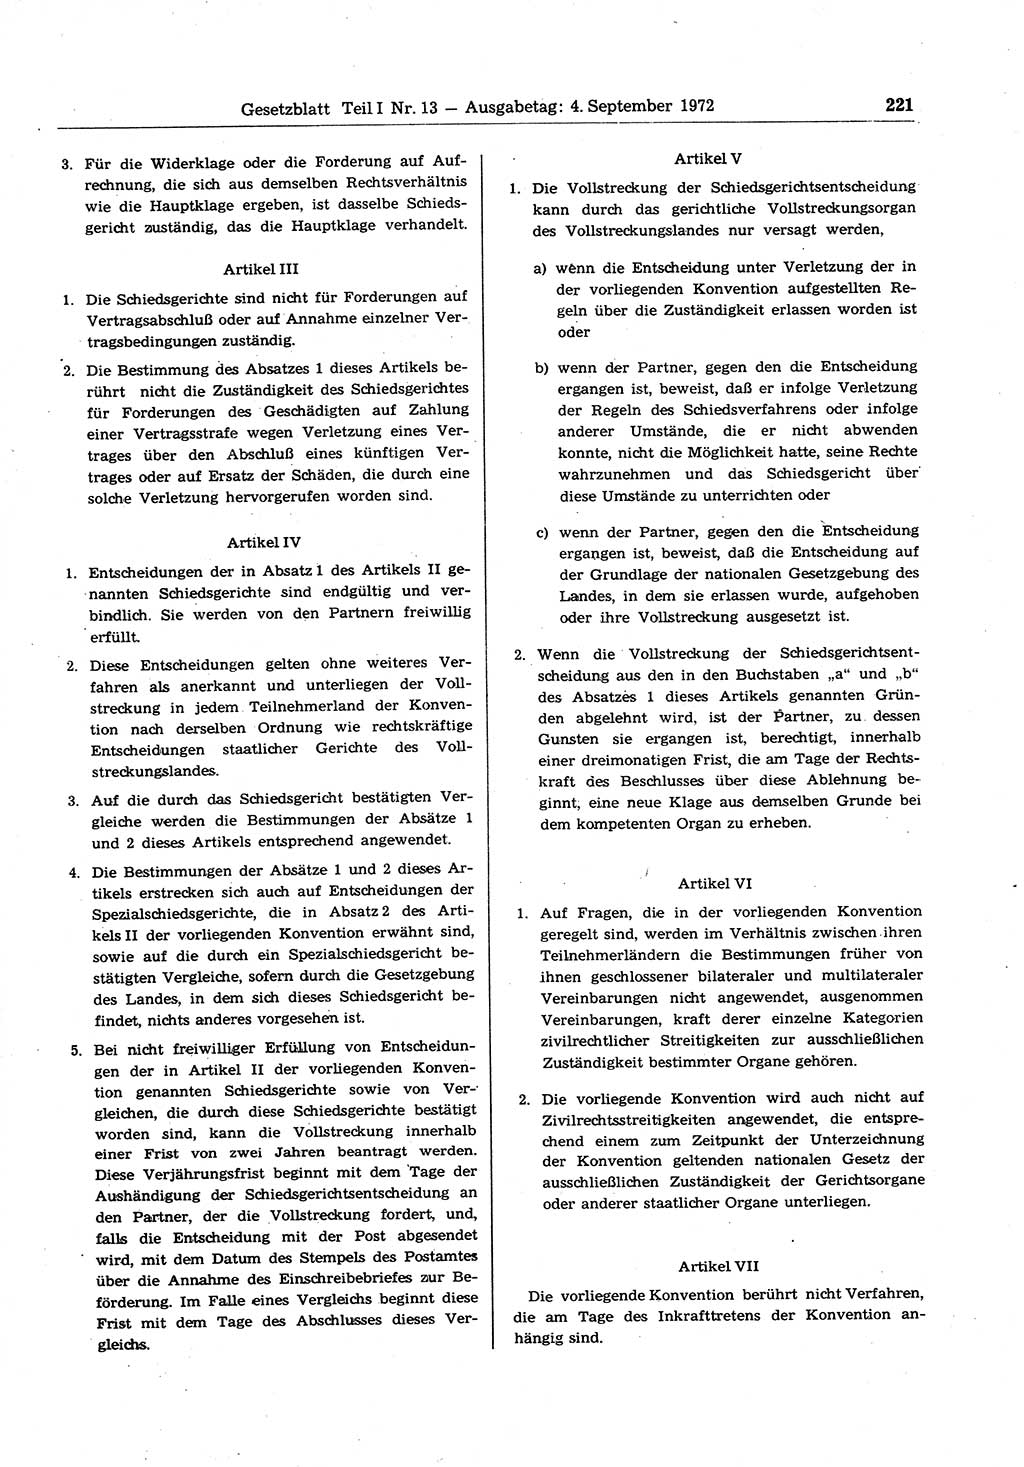 Gesetzblatt (GBl.) der Deutschen Demokratischen Republik (DDR) Teil Ⅰ 1972, Seite 221 (GBl. DDR Ⅰ 1972, S. 221)